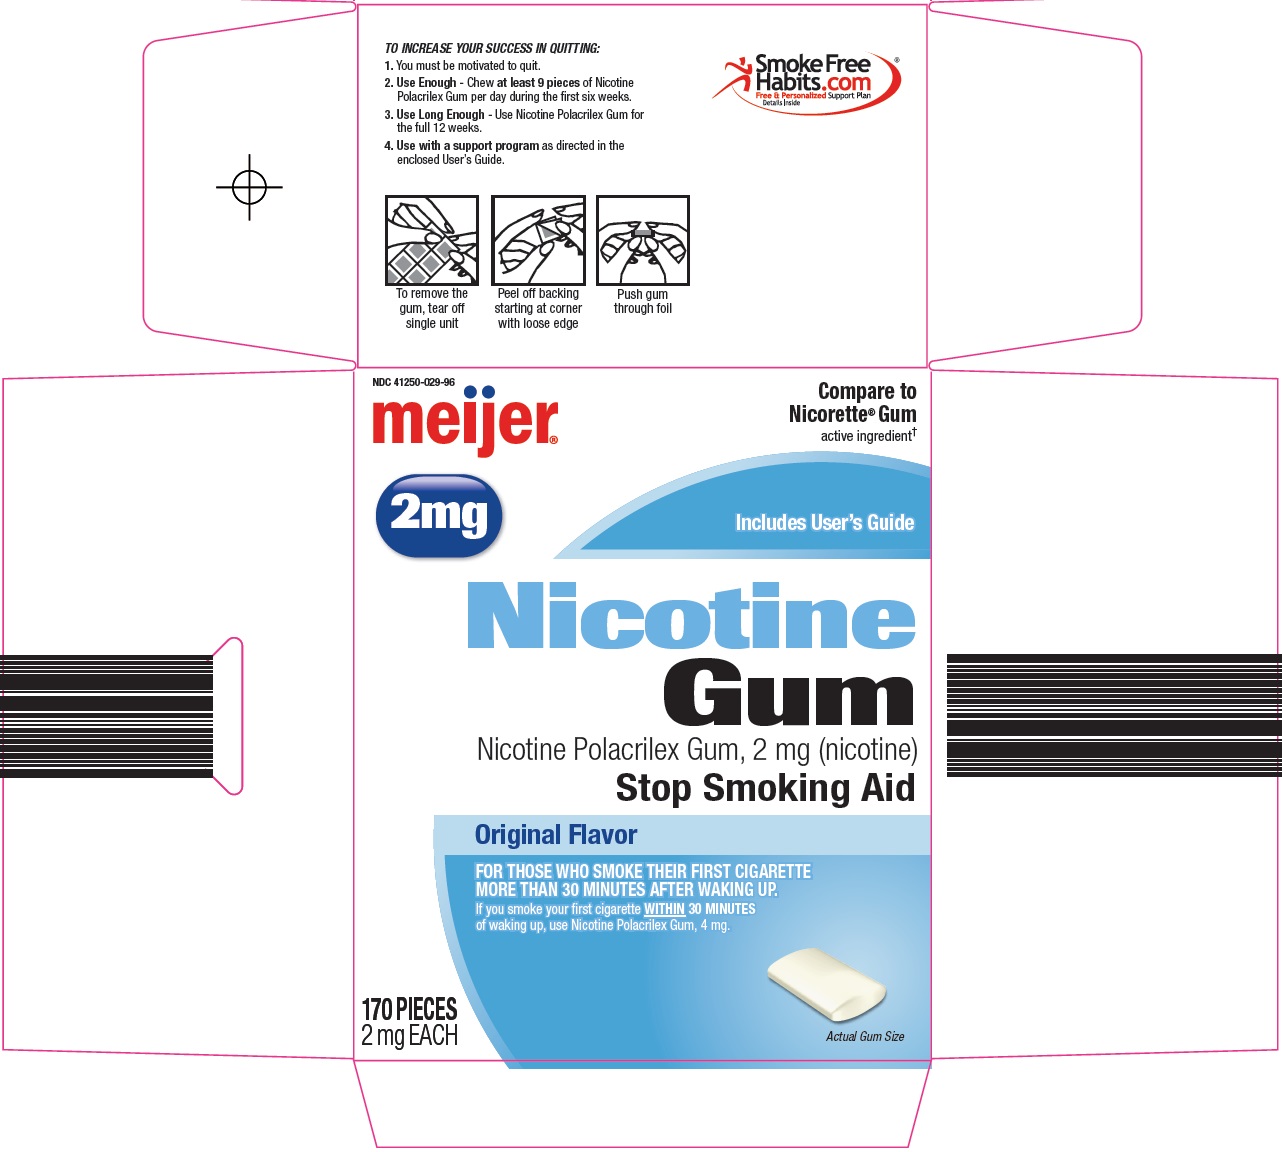 0296e-nicotine-gum-carton-image-1